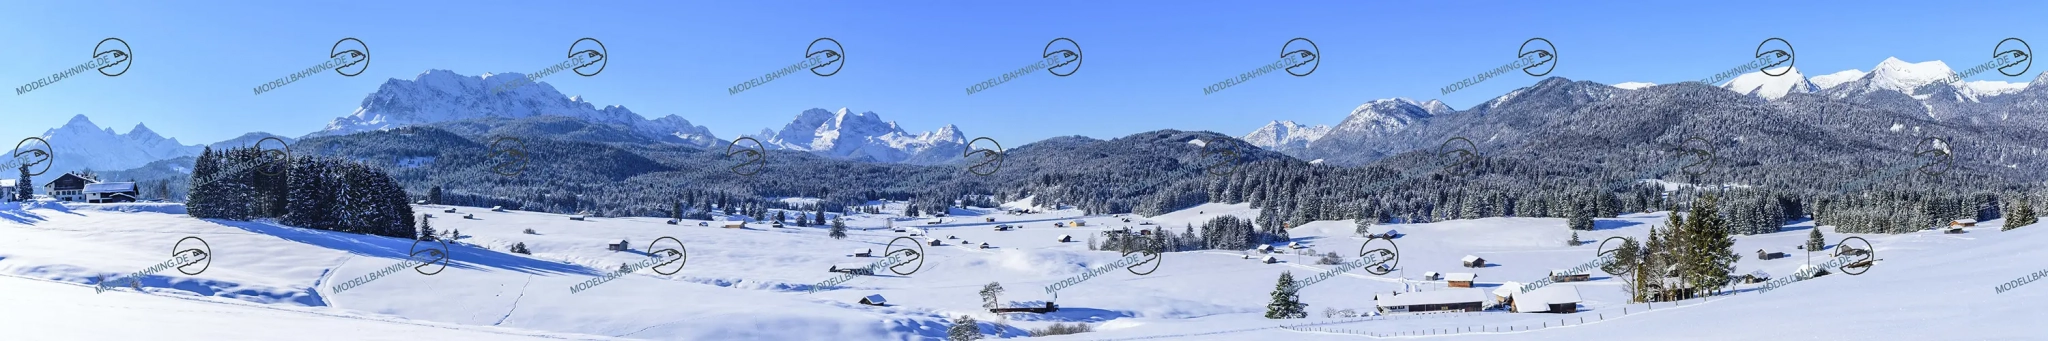 Modellbahnhintergrund: Alpenpanorama im Winter